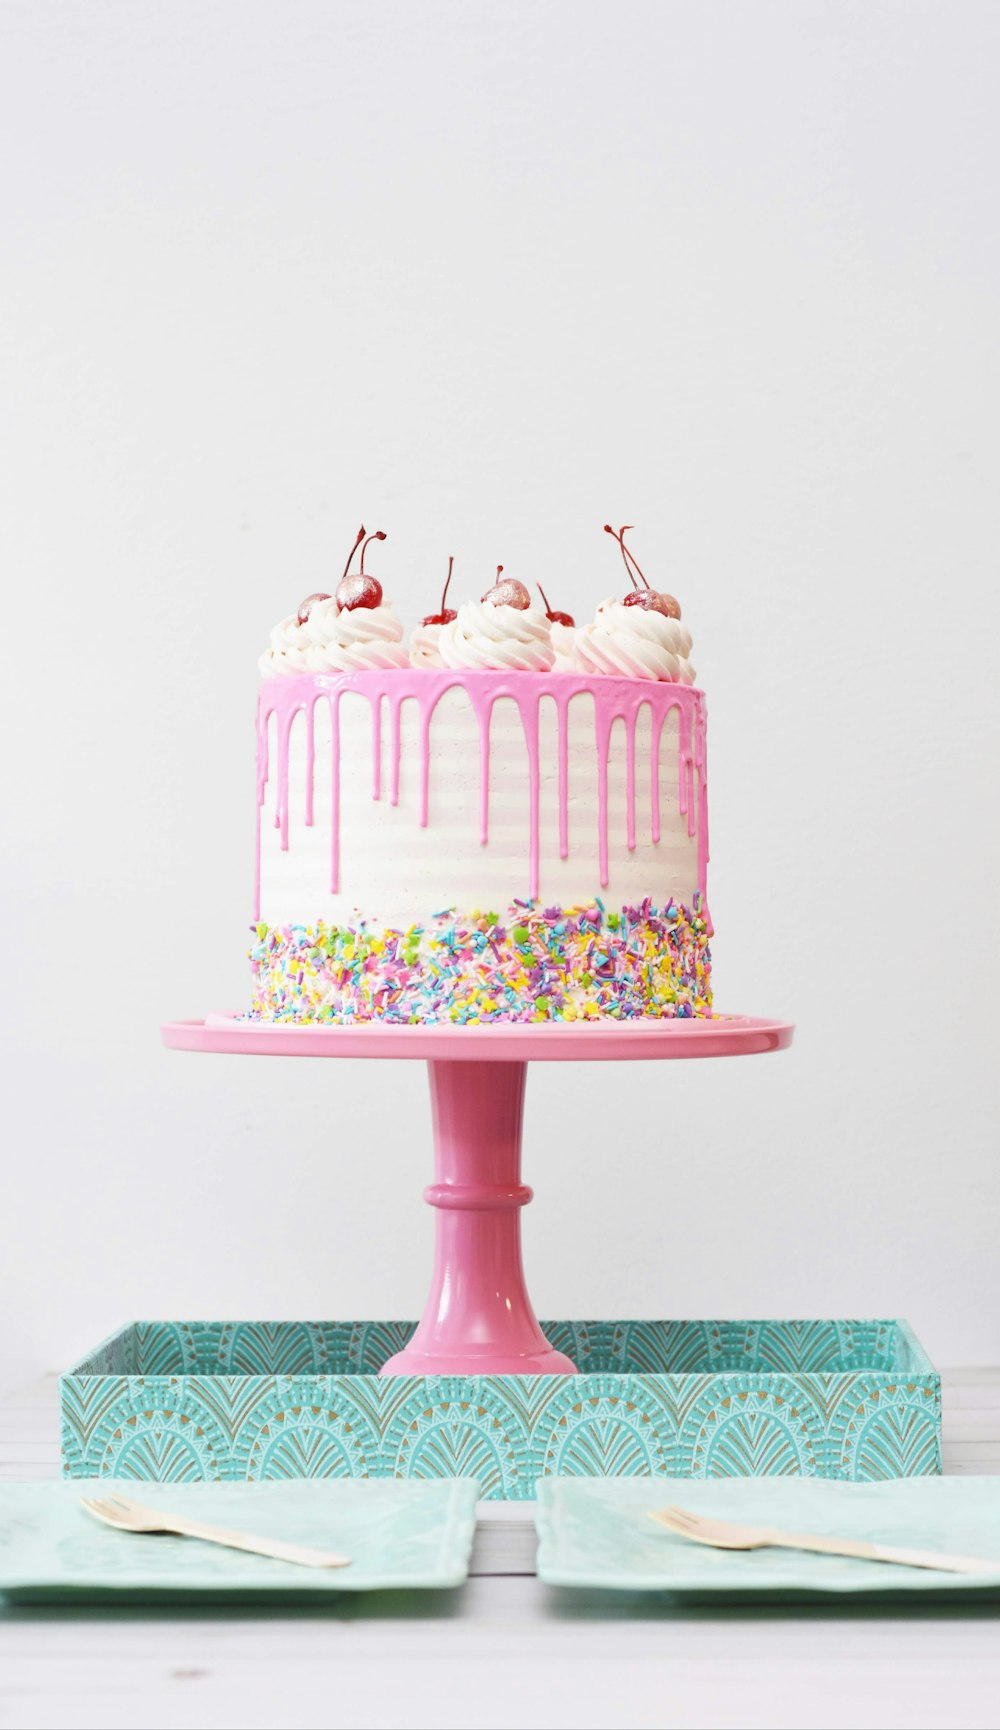 100 誕生日ケーキの写真 Unsplashで無料の画像とストックフォトをダウンロード